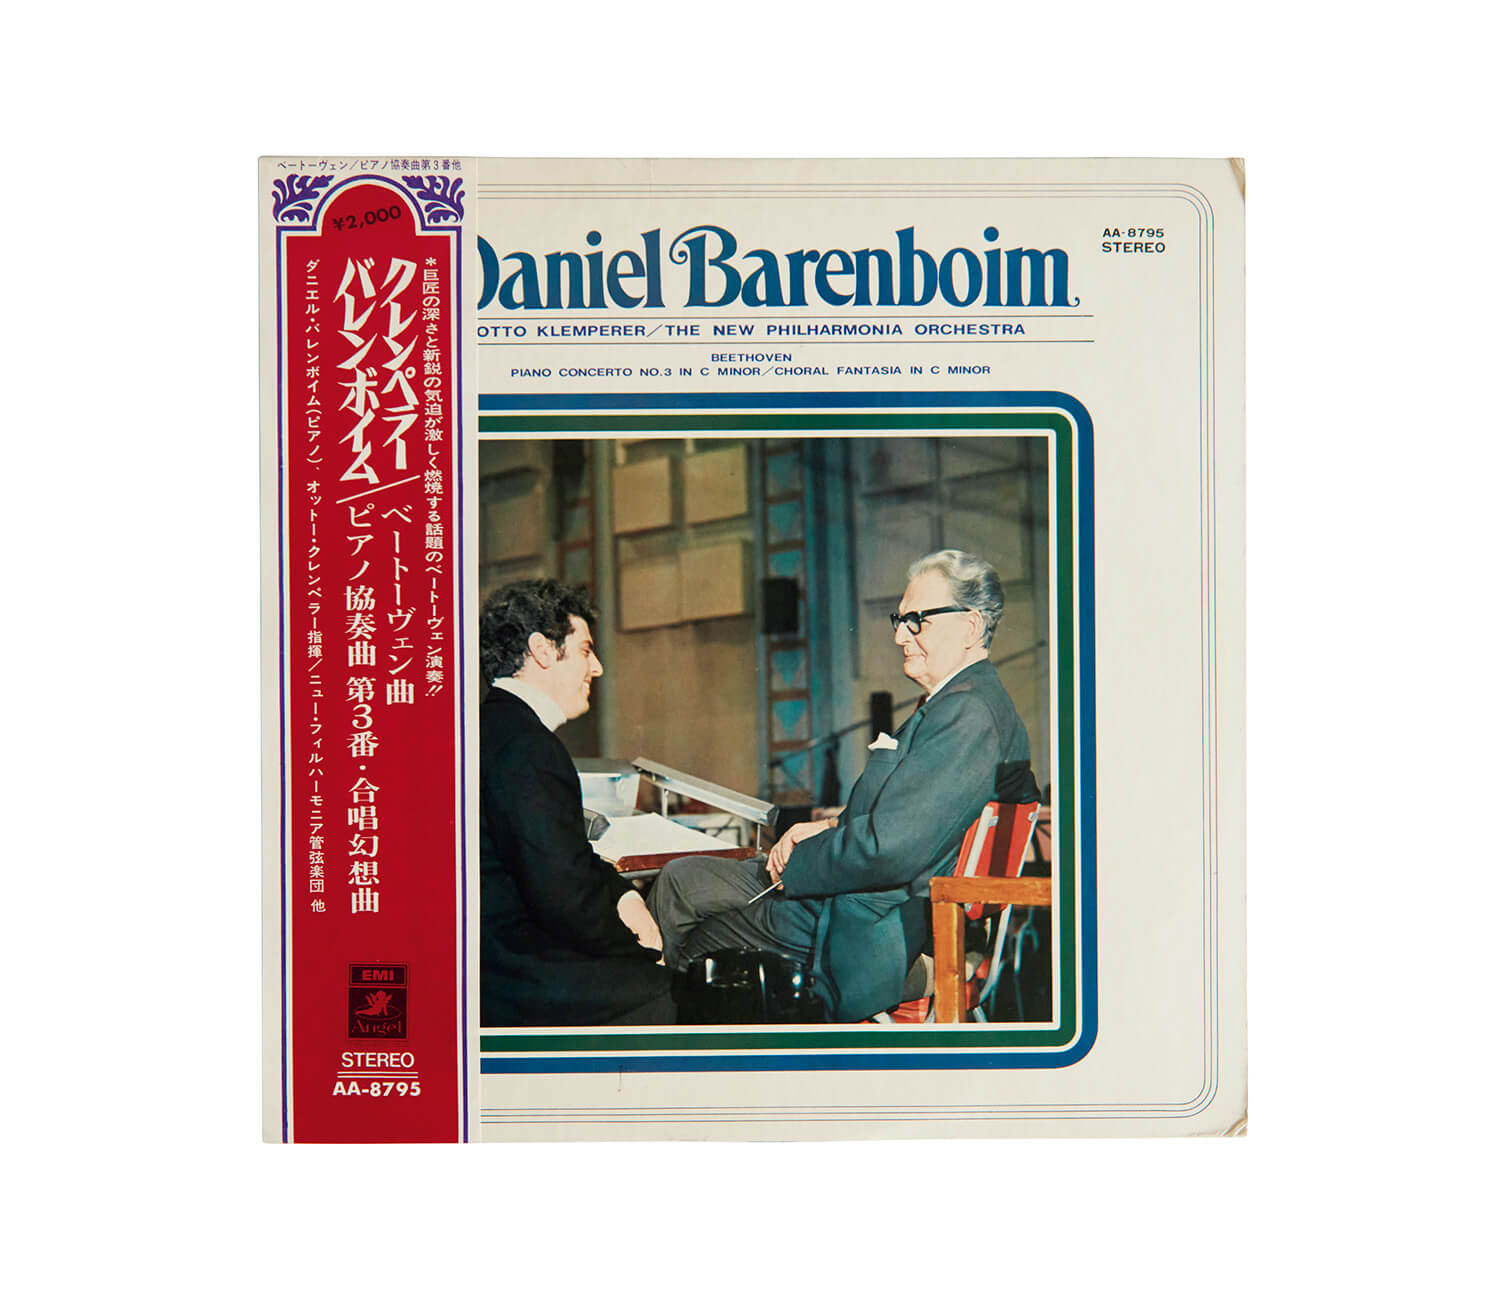 ダニエル・バレンボイムが演奏した、ベートーヴェン「ピアノ協奏曲第3番 ハ短調」レコードジャケット